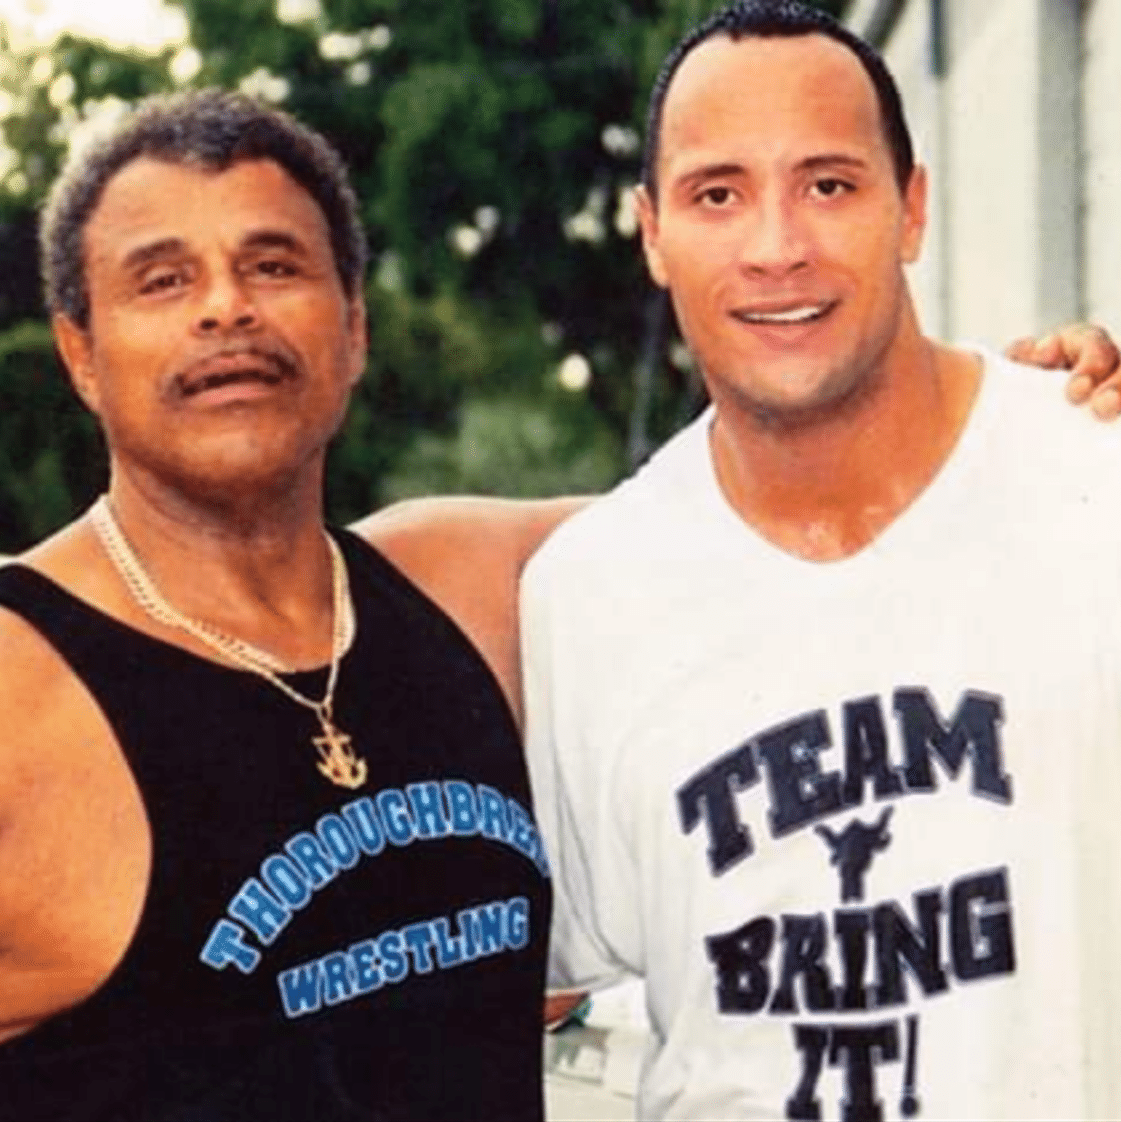 The Rock e Dwayne Johnson: 11 pistas para descobrir se são irmãos